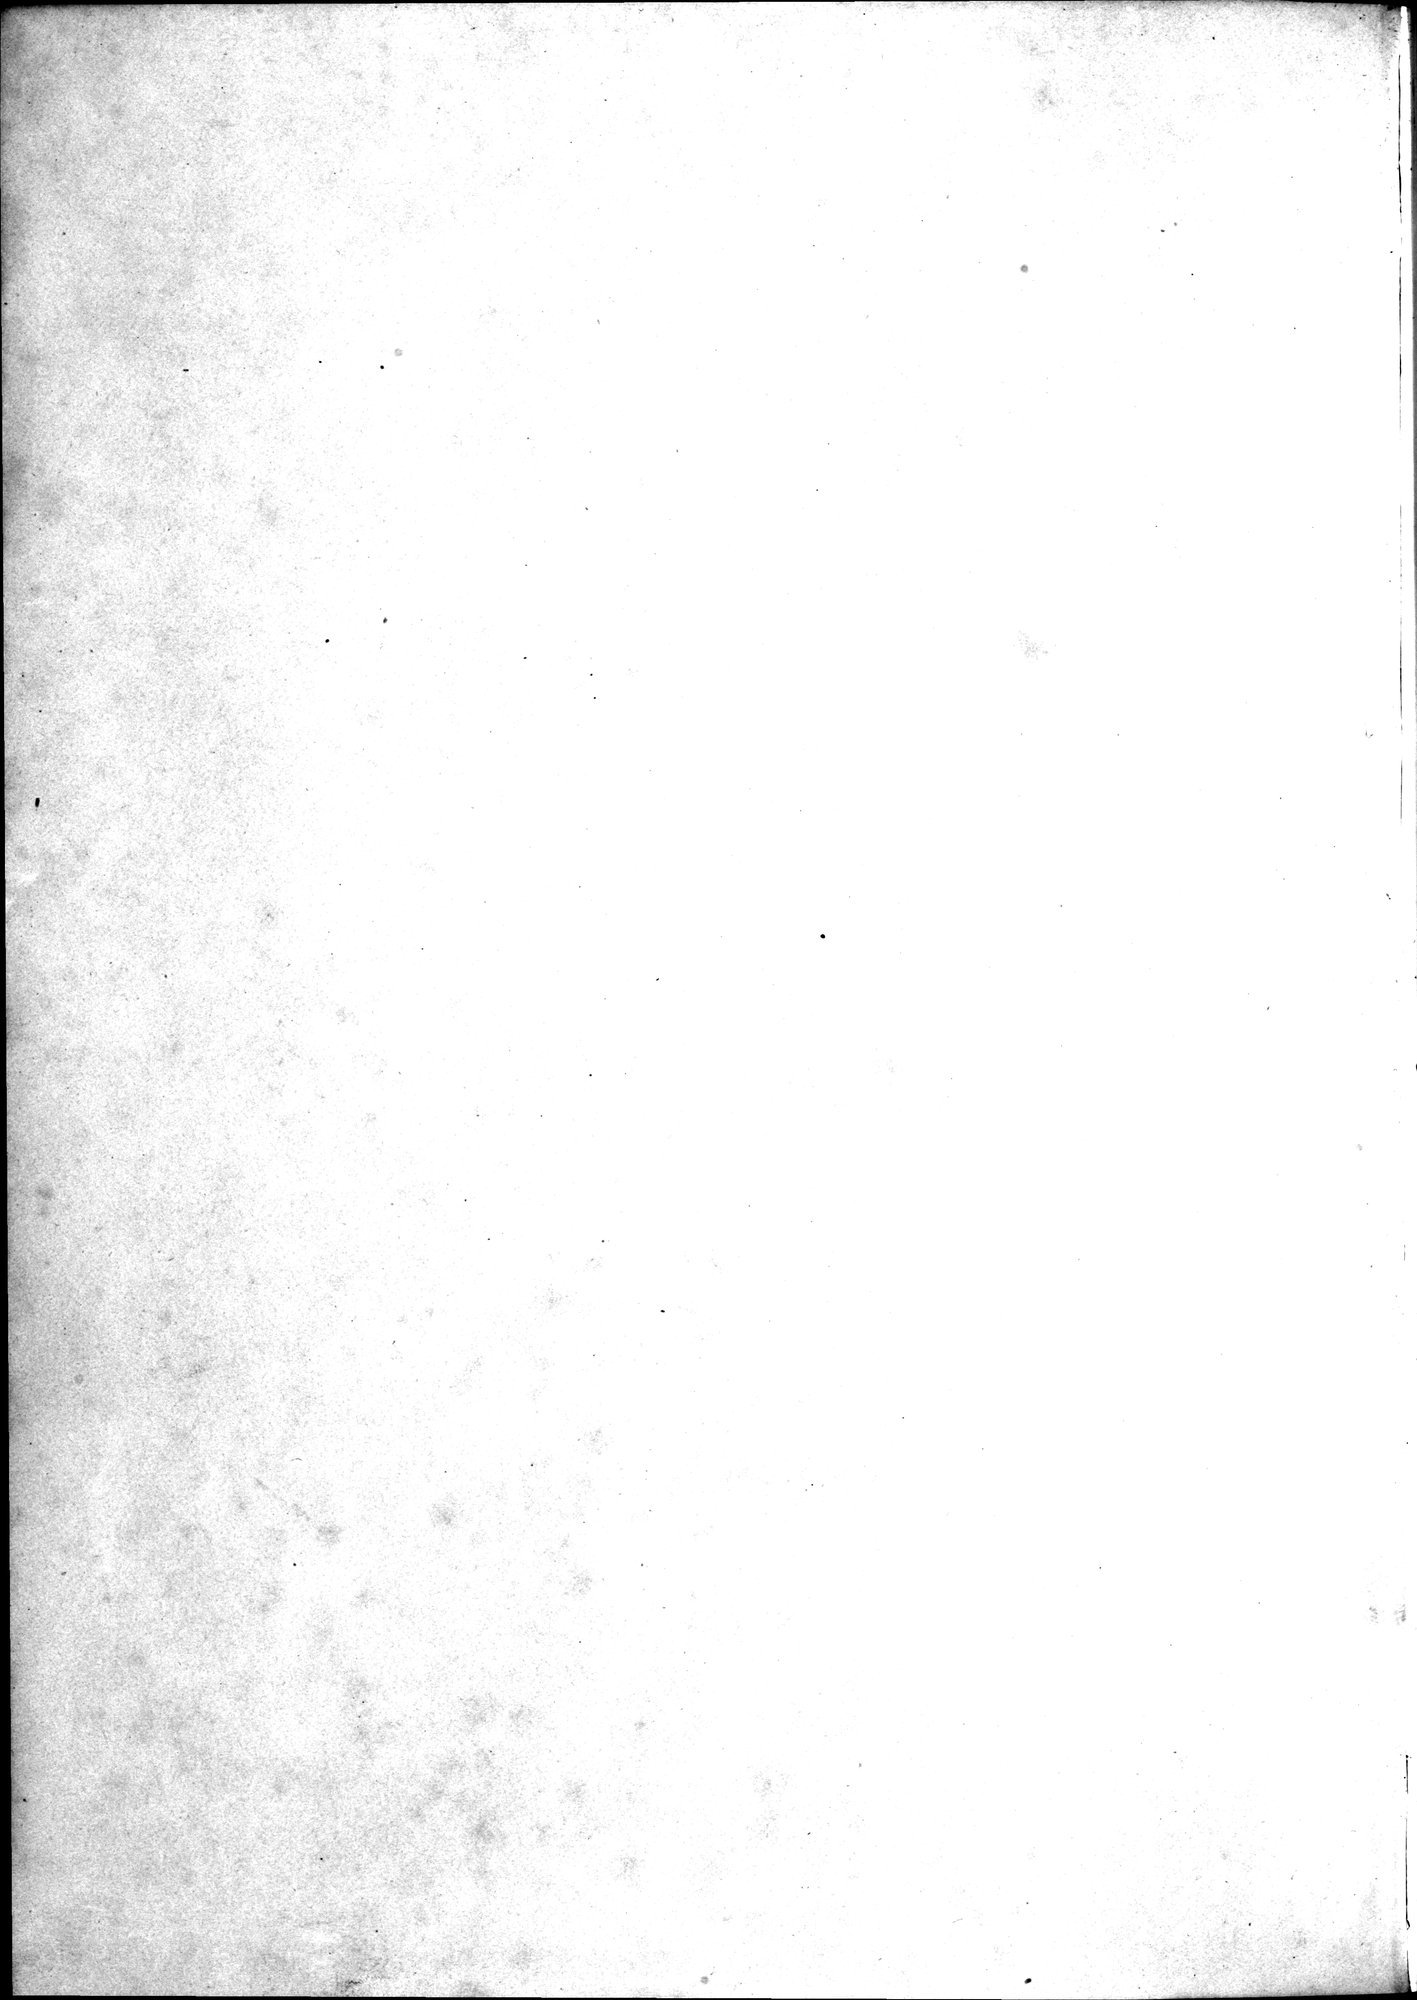 Kunstgeschichte der Seidenweberei : vol.1 / Page 6 (Grayscale High Resolution Image)